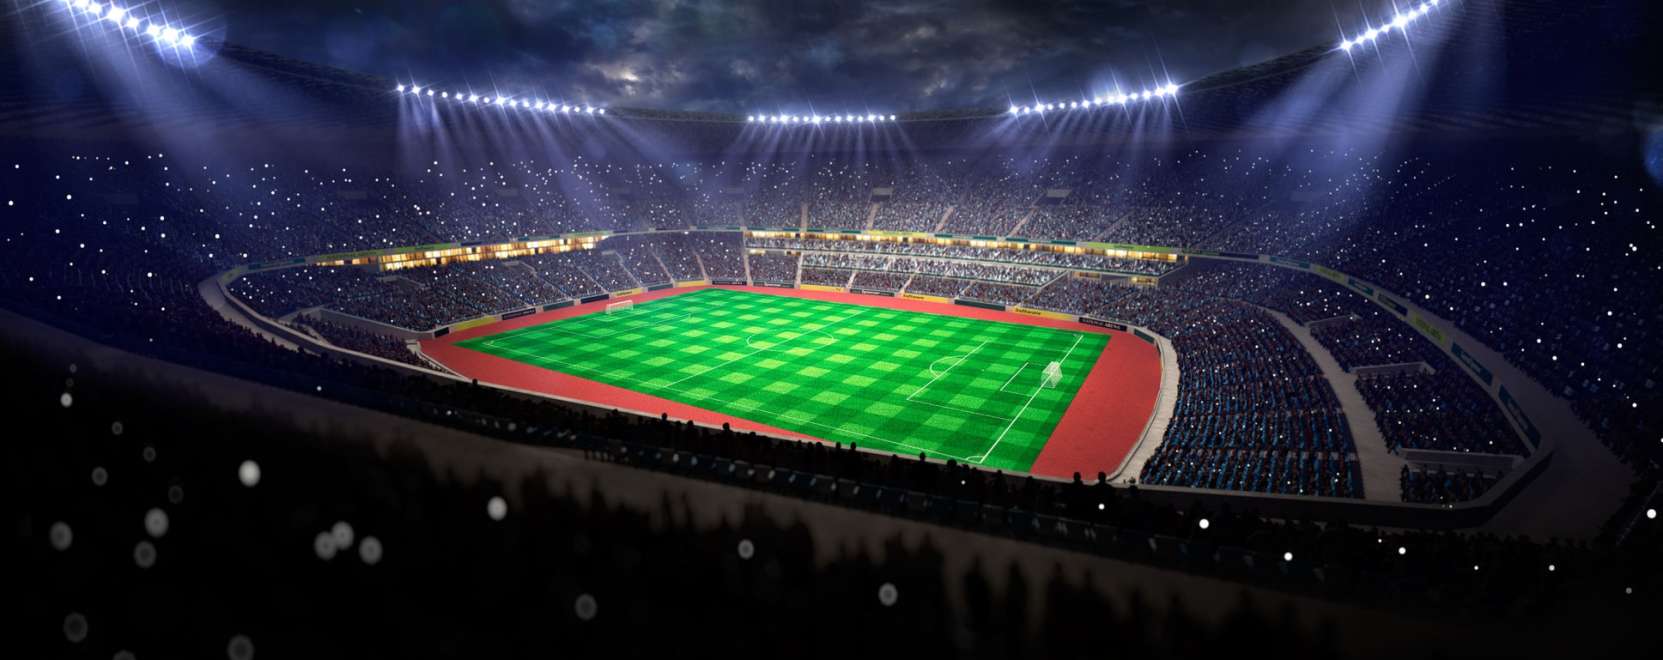 A stadionok jó terepei lehetnek az okosváros-fejlesztéseknek